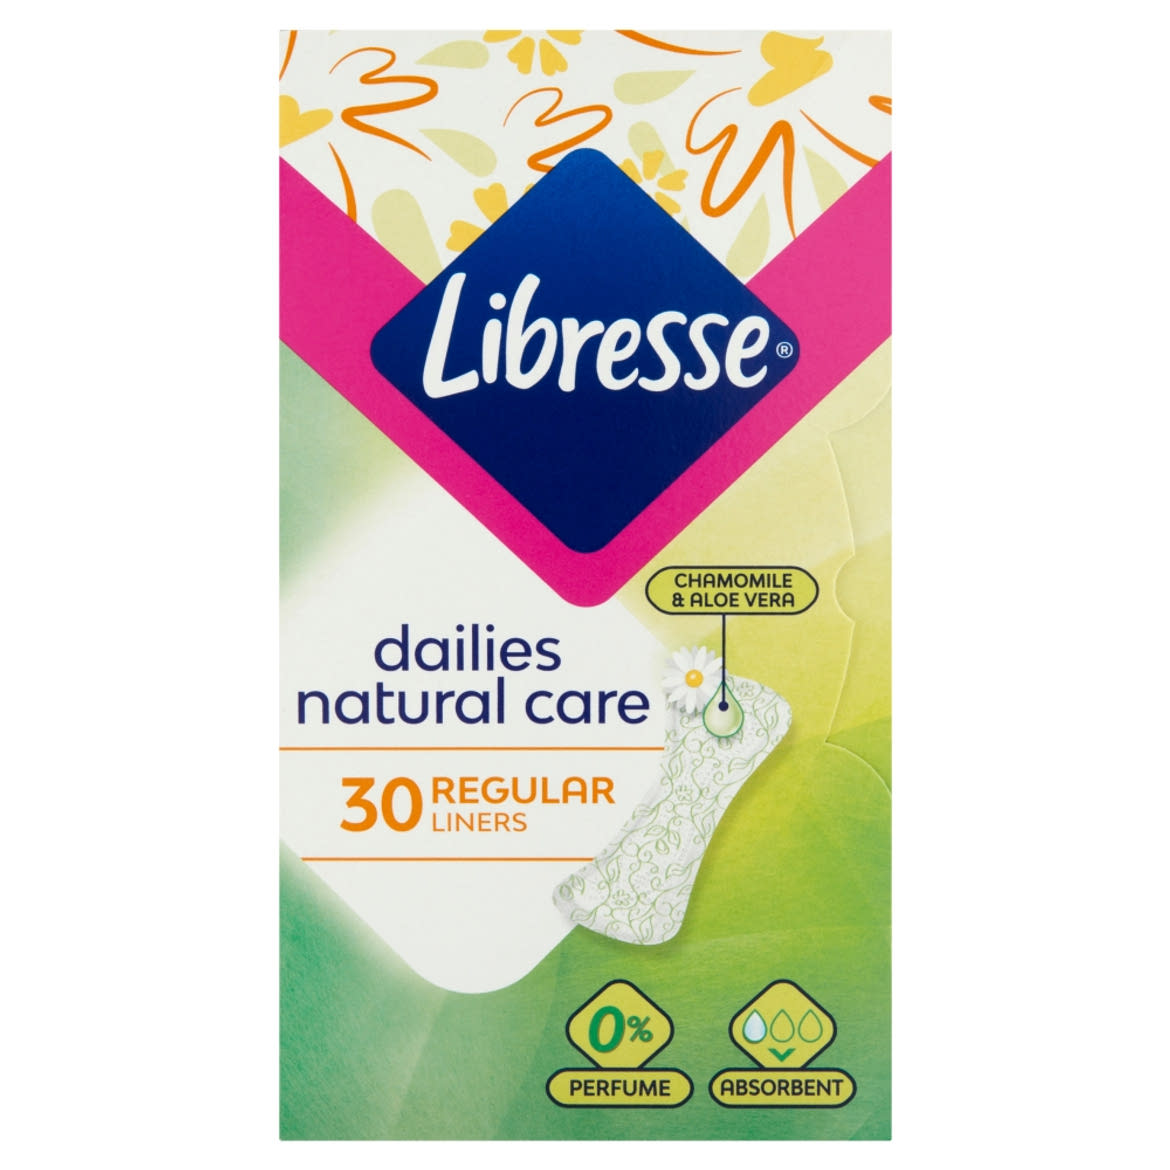 Libresse Dailies Natural Care Regular tisztasági betét, aloe vera és kamilla kivonattal